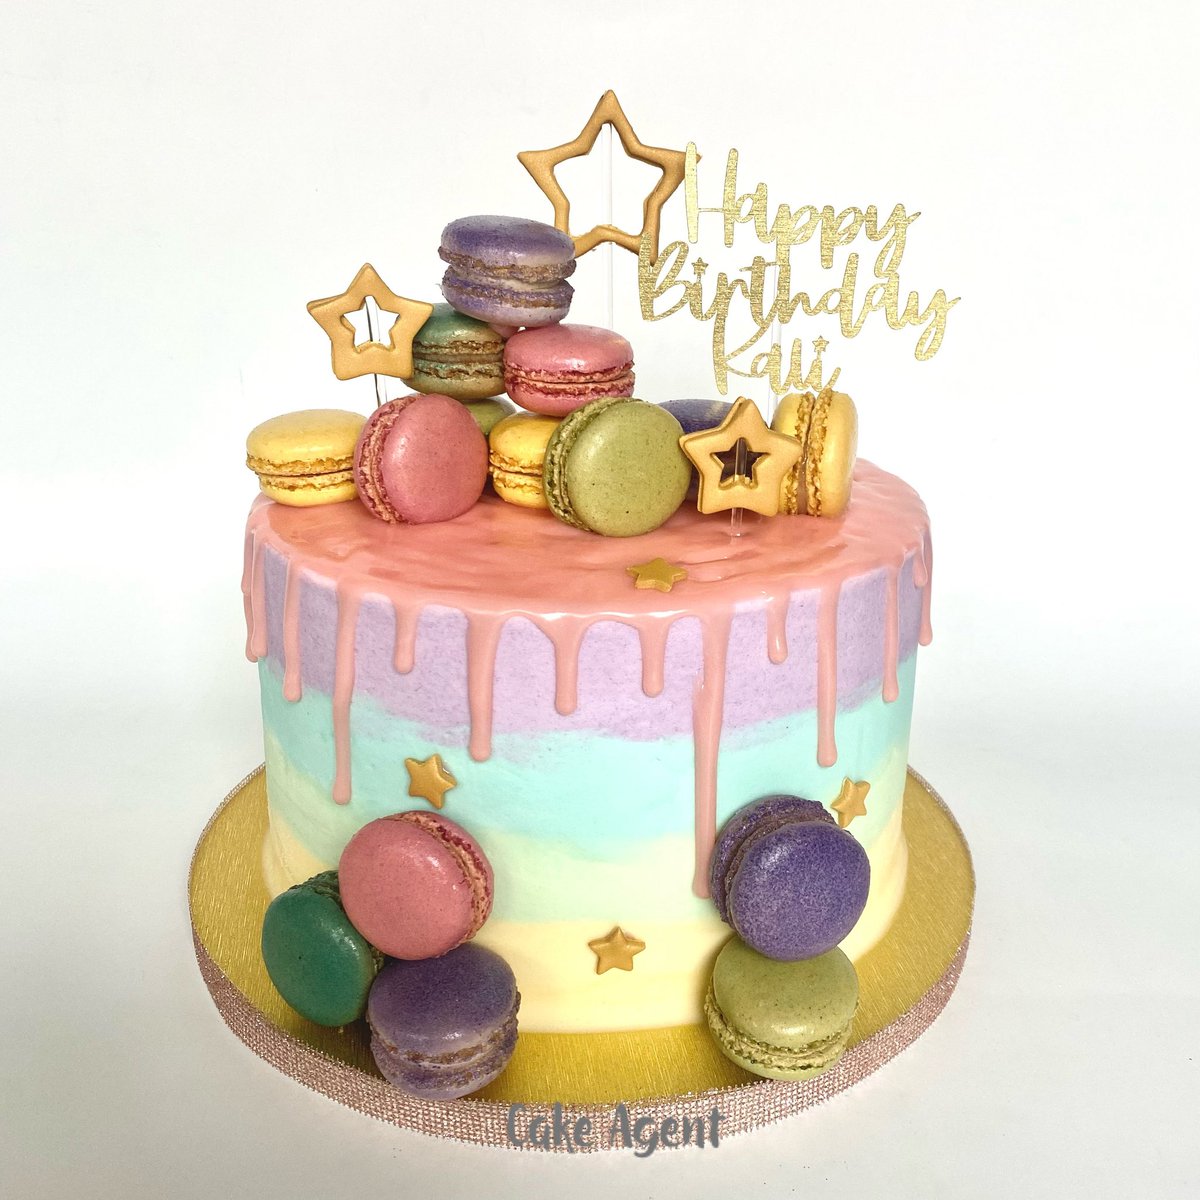 #macaronscake #pastelcake #colorfulcake #macarons #birthdaycake #cakeagent